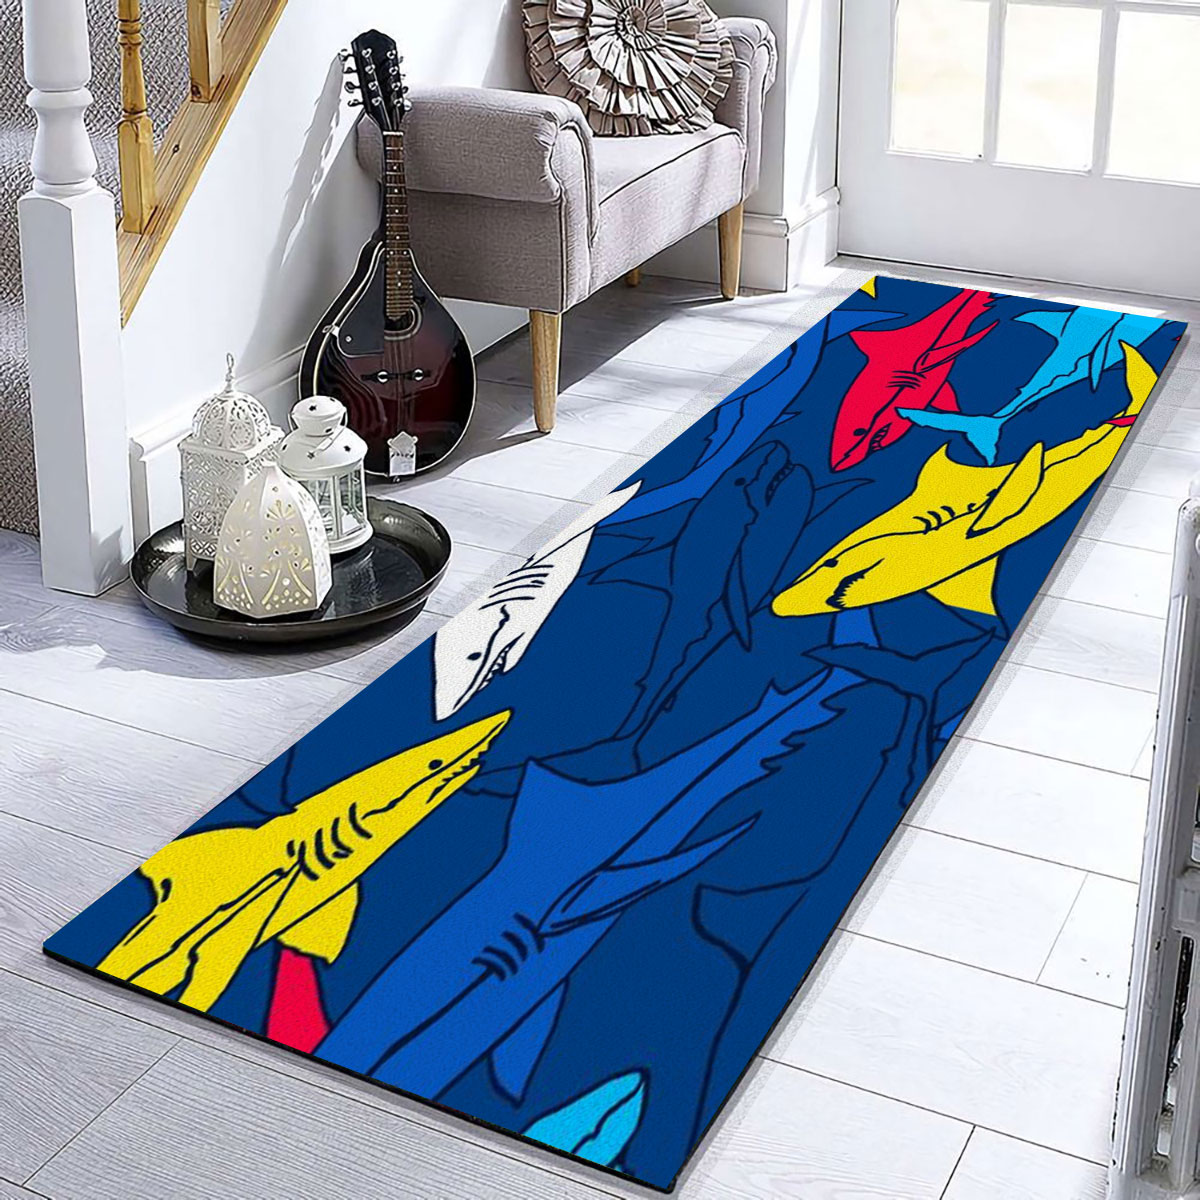 Colorful Great White Shark Runner Carpet